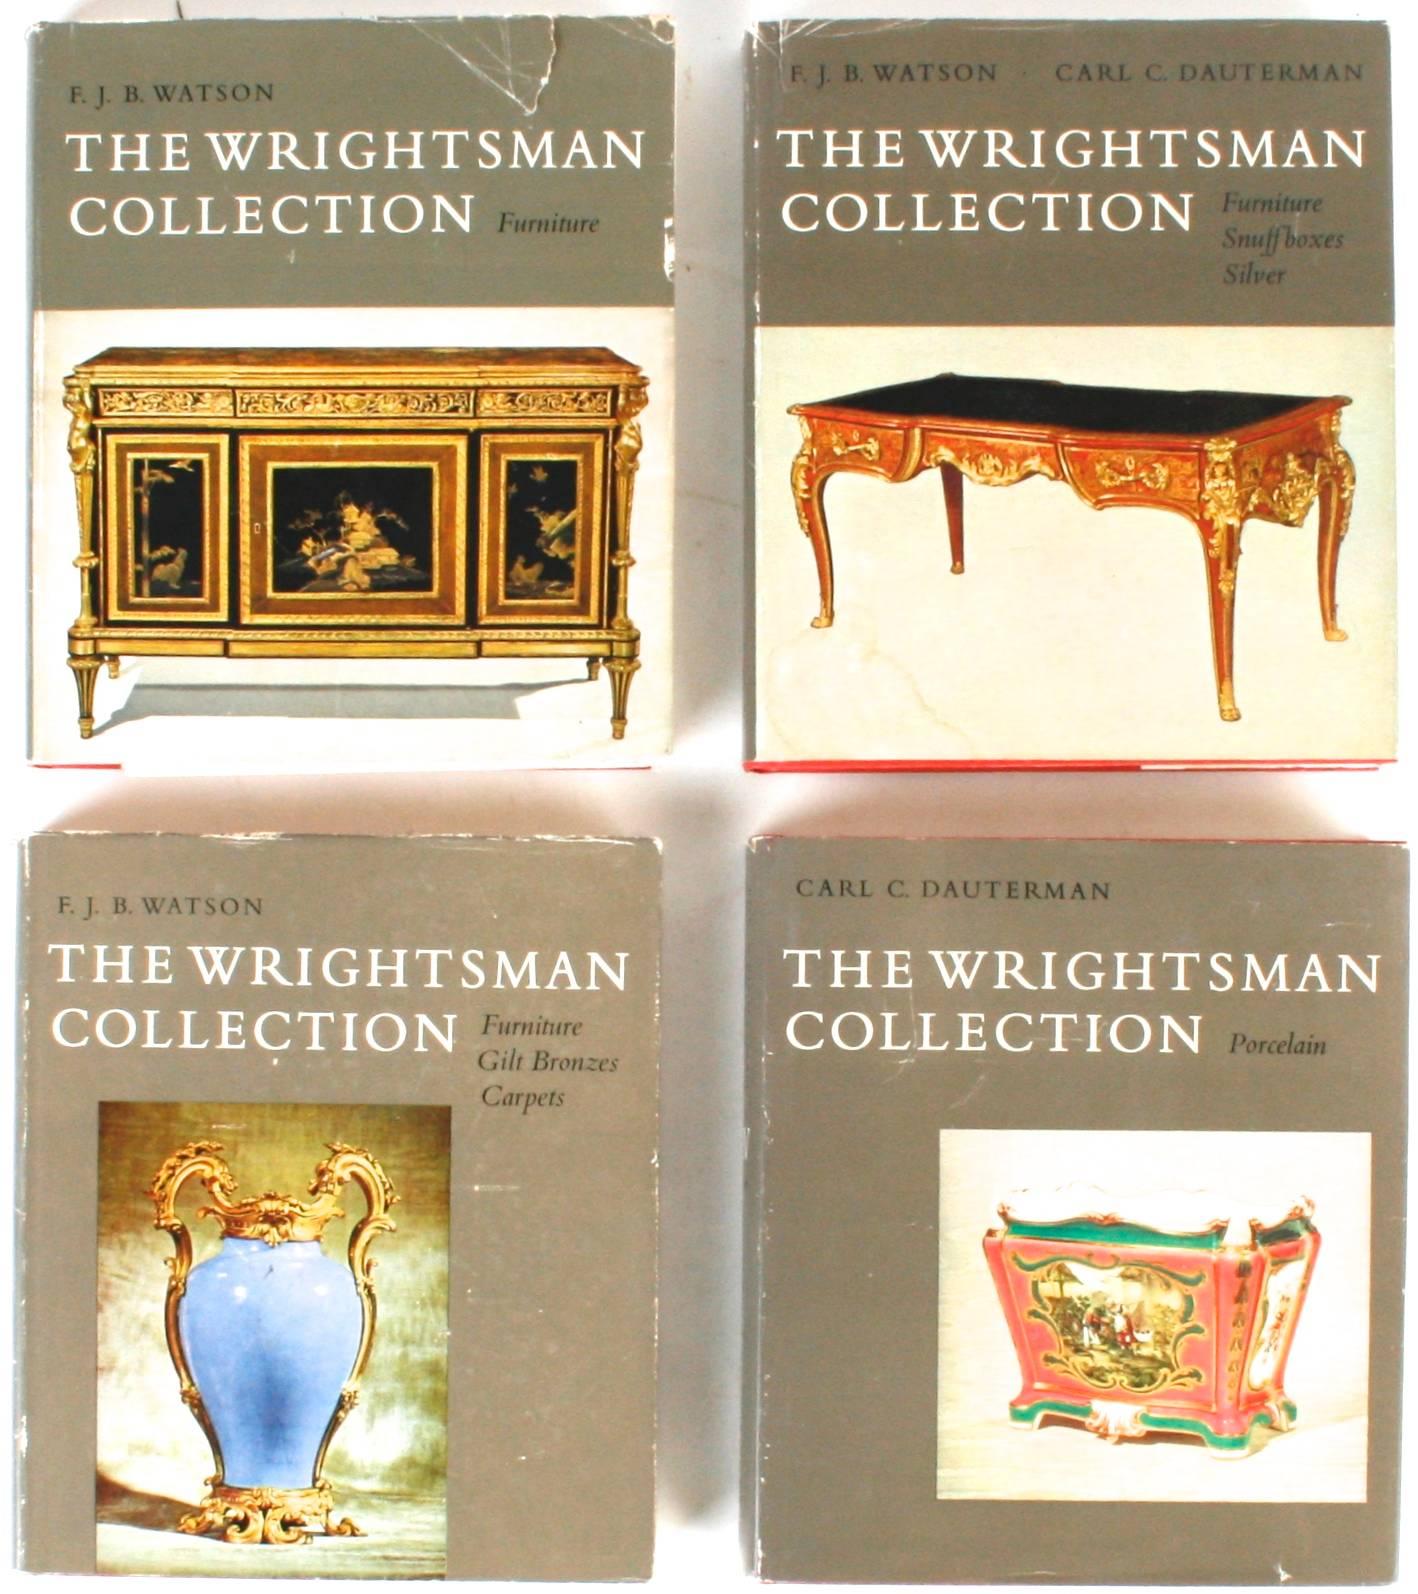 La collection Wrightsman, Vols. I-V. New York : The Metropolitan Museum of Art, 1966-1973. Première édition cartonnée avec jaquette. 2248 pp. Inscrit par les Wrightsman. La série complète des catalogues de la collection Wrightsman du Metropolitan